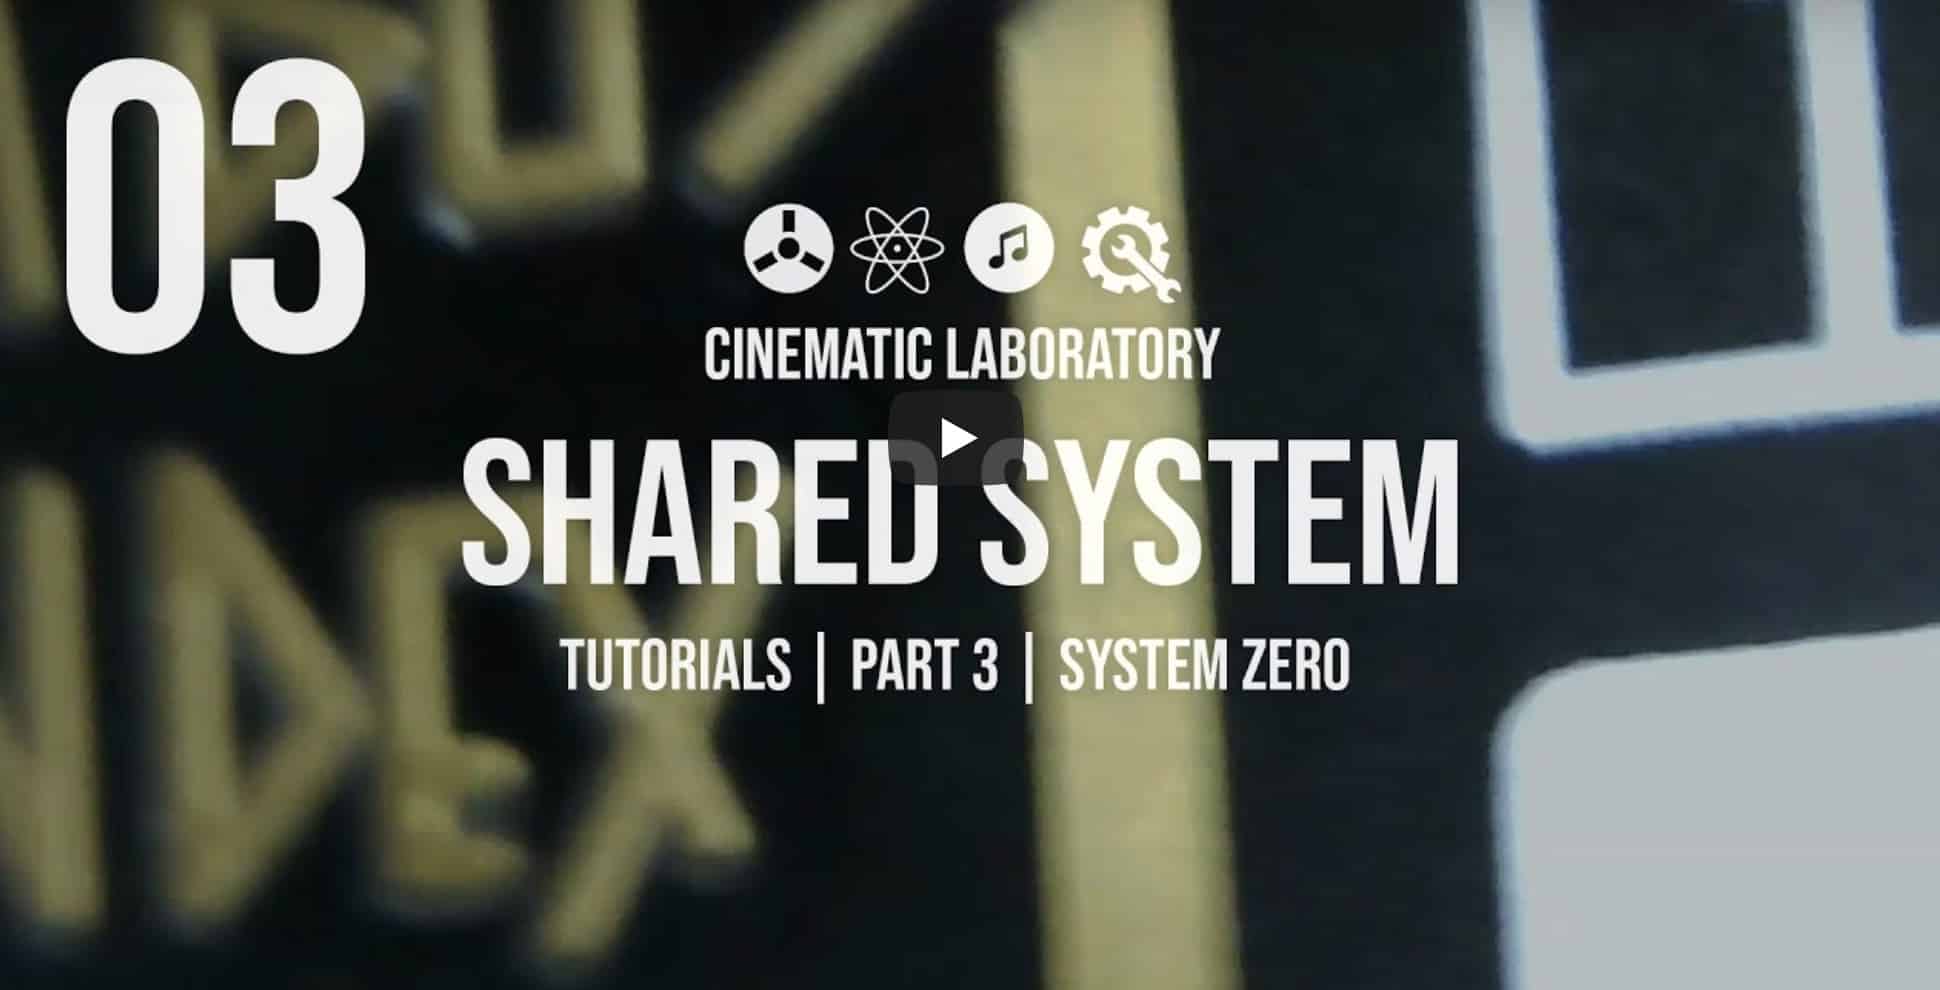 Shared System Tutorials Part 3 System Zero